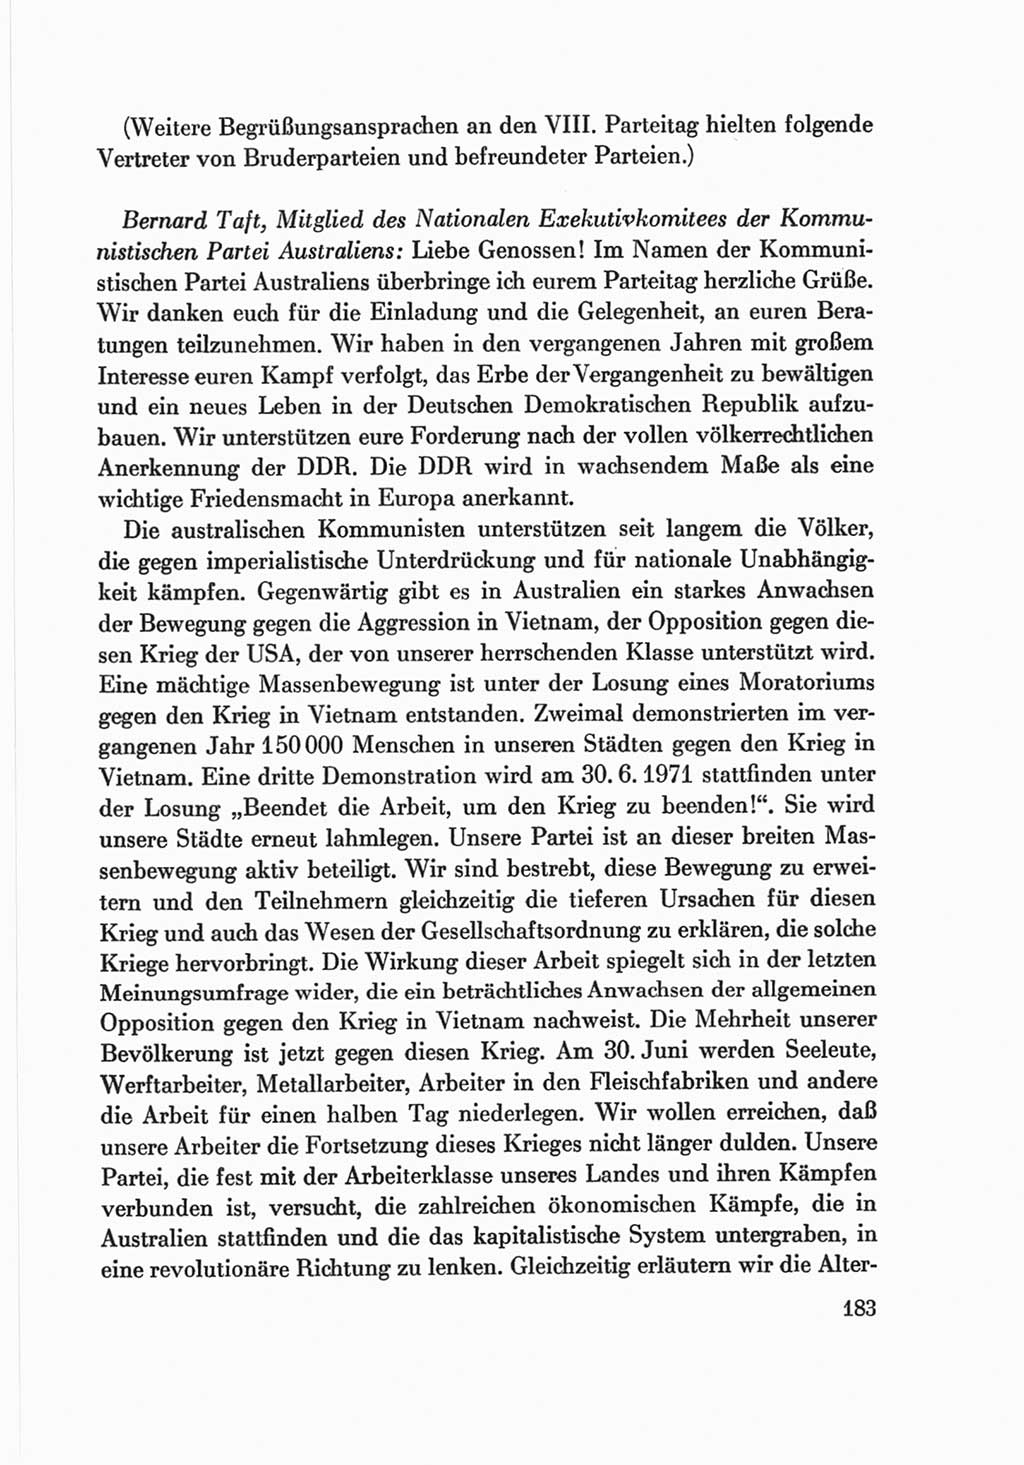 Protokoll der Verhandlungen des Ⅷ. Parteitages der Sozialistischen Einheitspartei Deutschlands (SED) [Deutsche Demokratische Republik (DDR)] 1971, Band 2, Seite 183 (Prot. Verh. Ⅷ. PT SED DDR 1971, Bd. 2, S. 183)